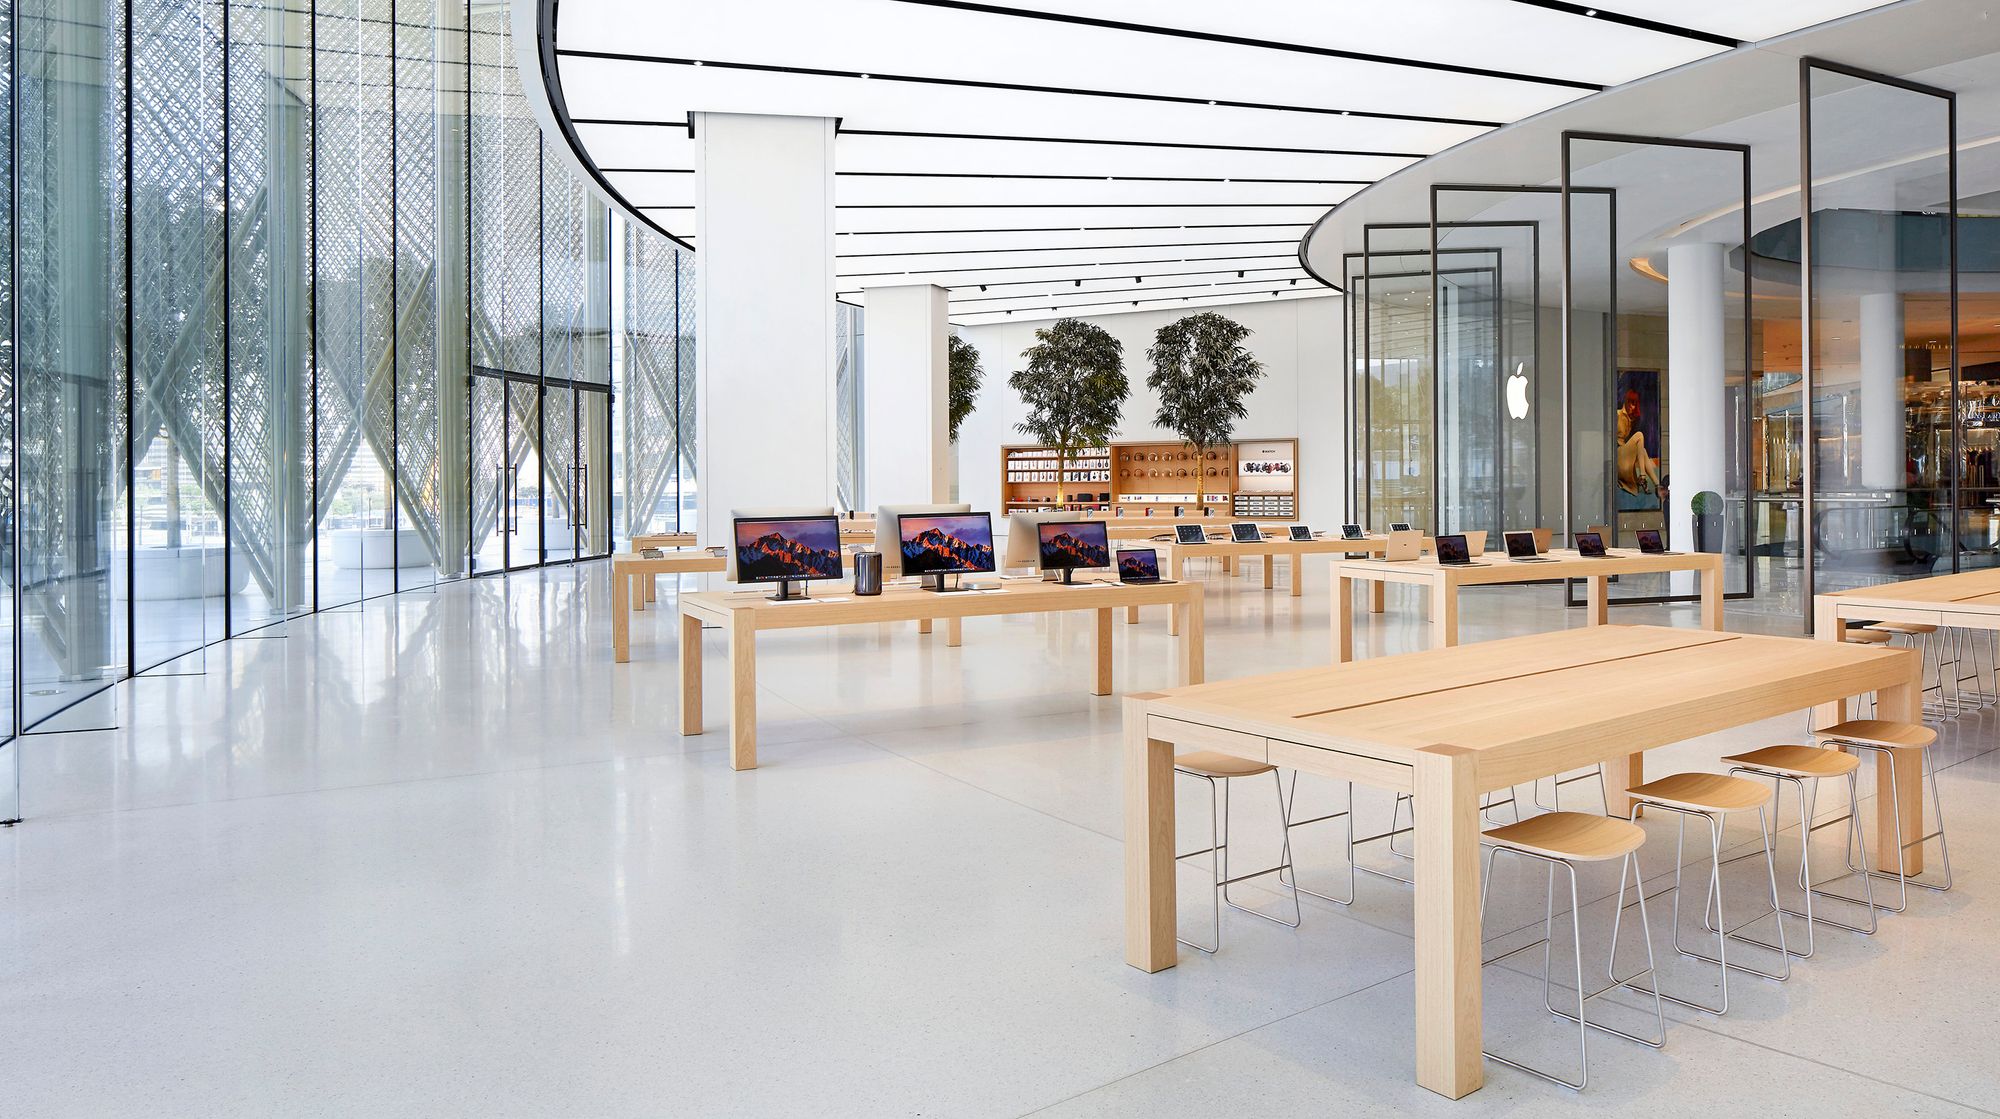 Apple планирует открыть или реконструировать около 50 магазинов по всему миру к 2027 году